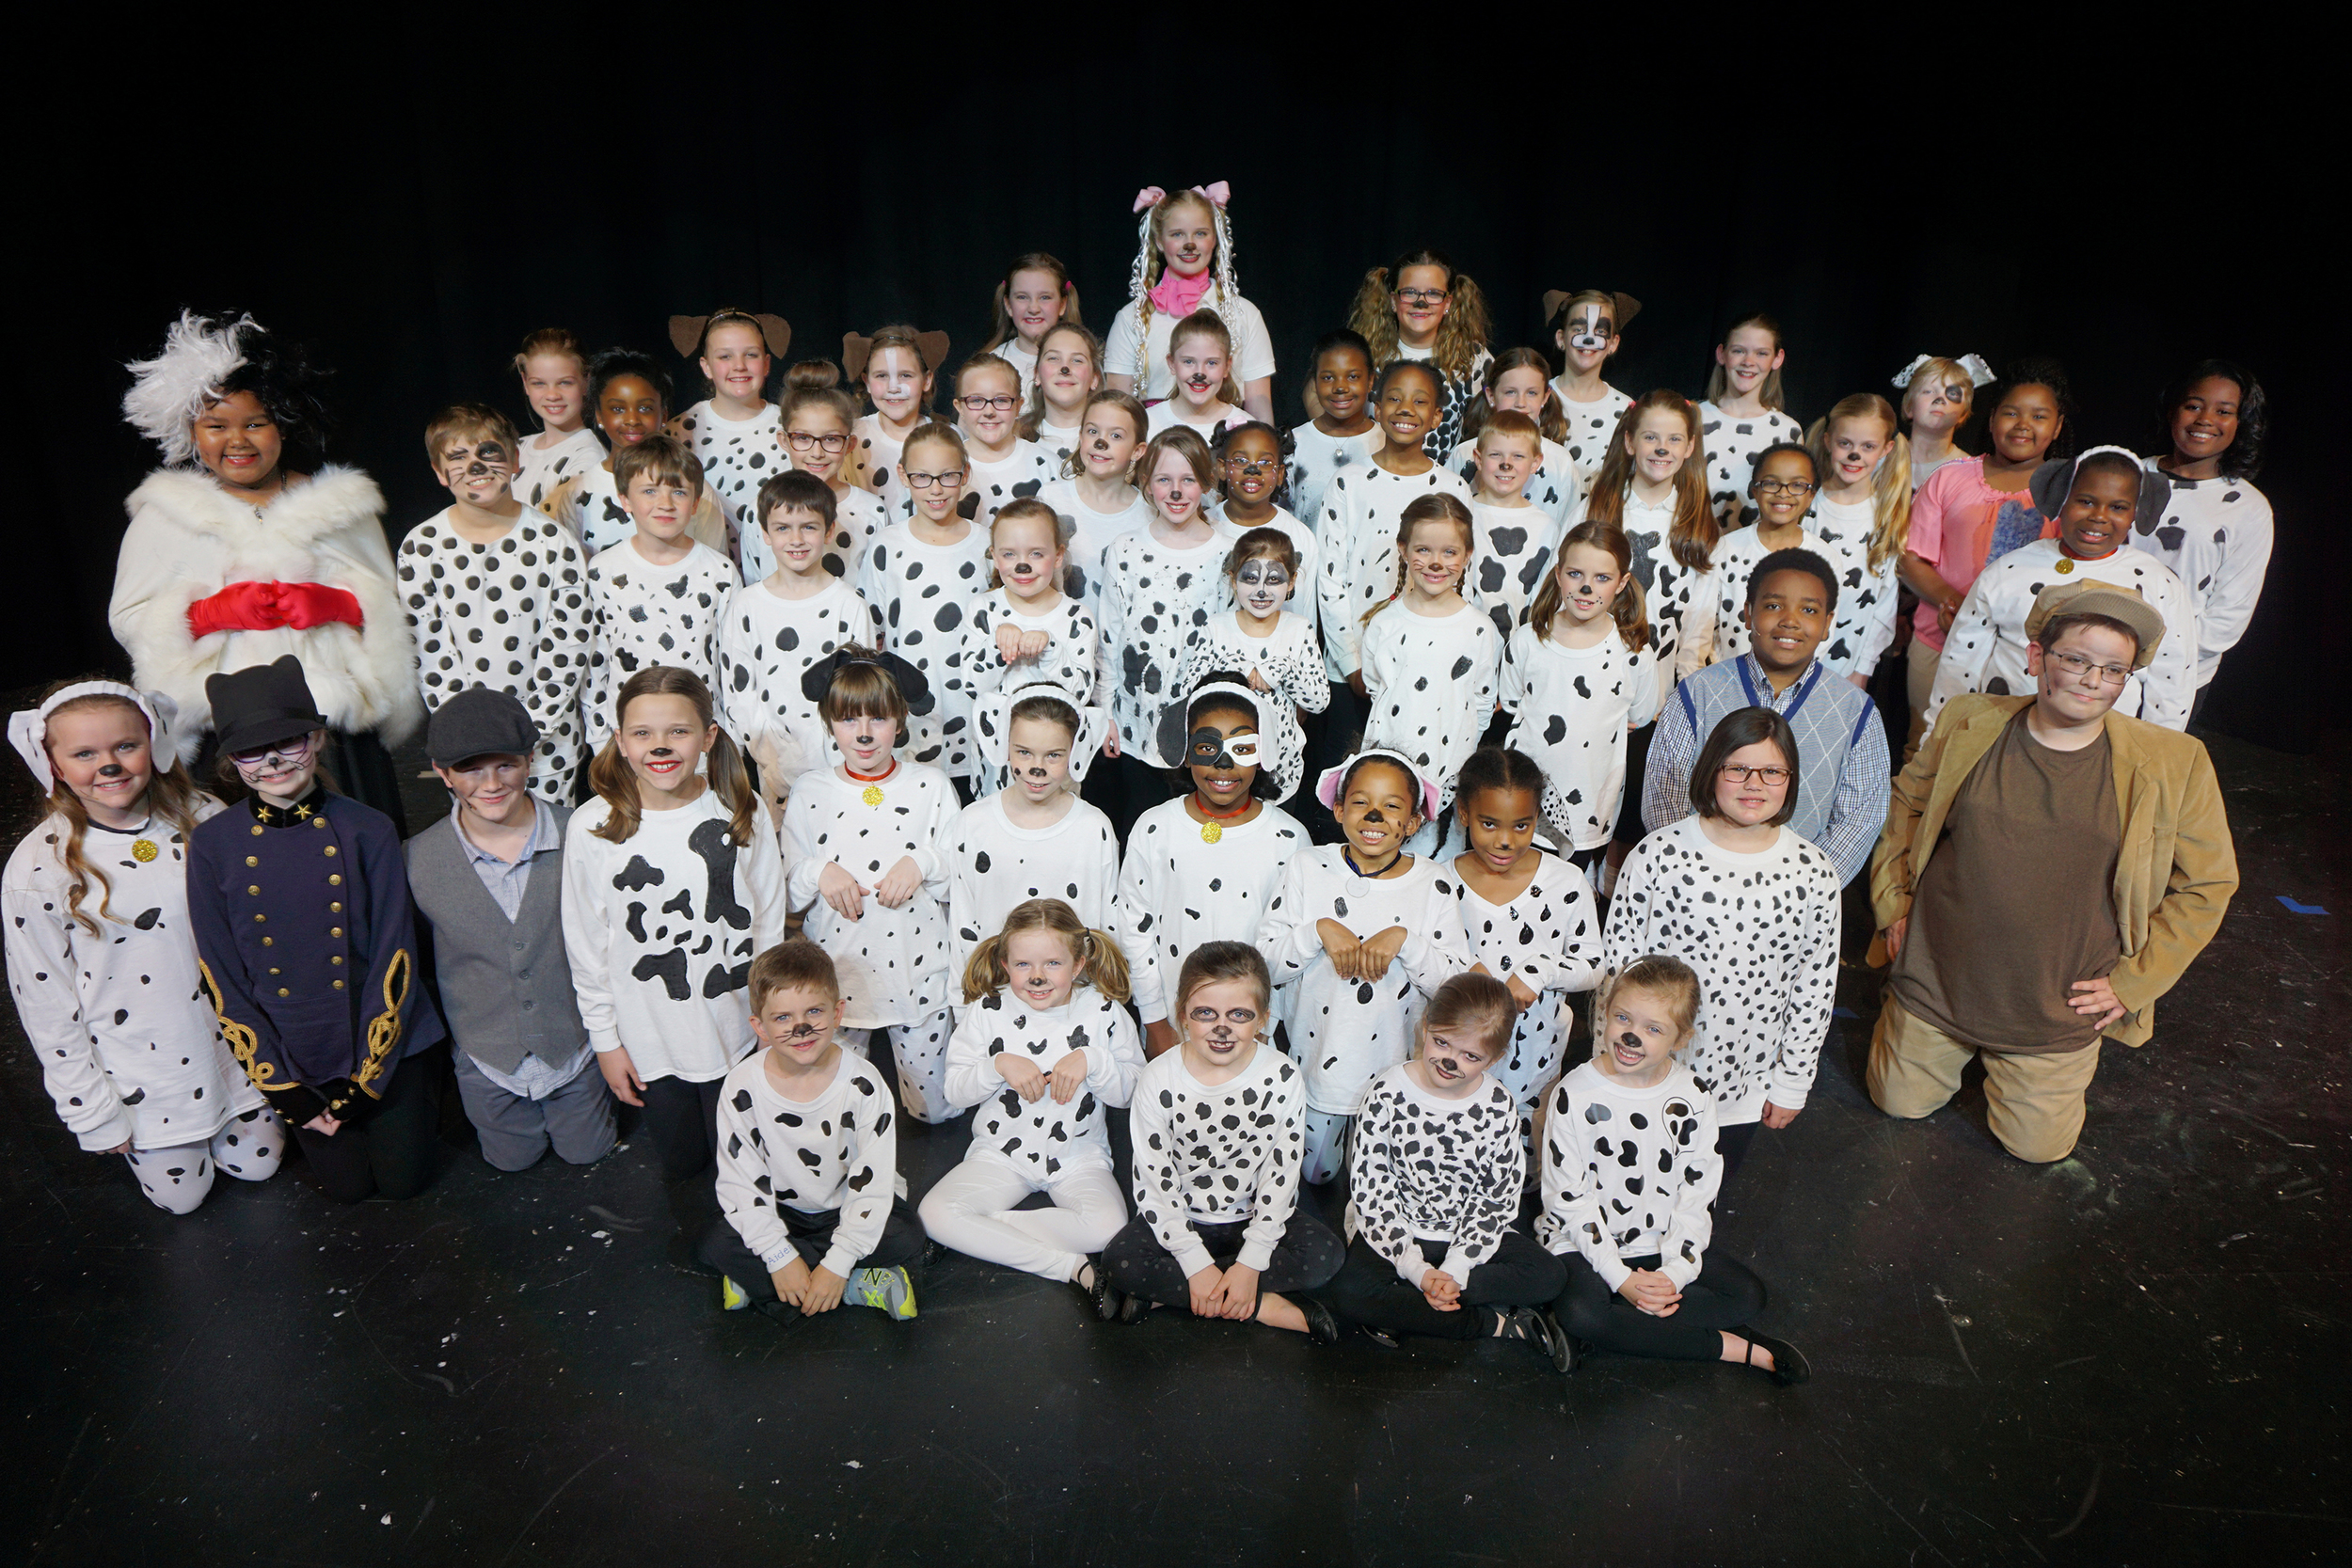 The cast of 101 Dalmatians KIDS